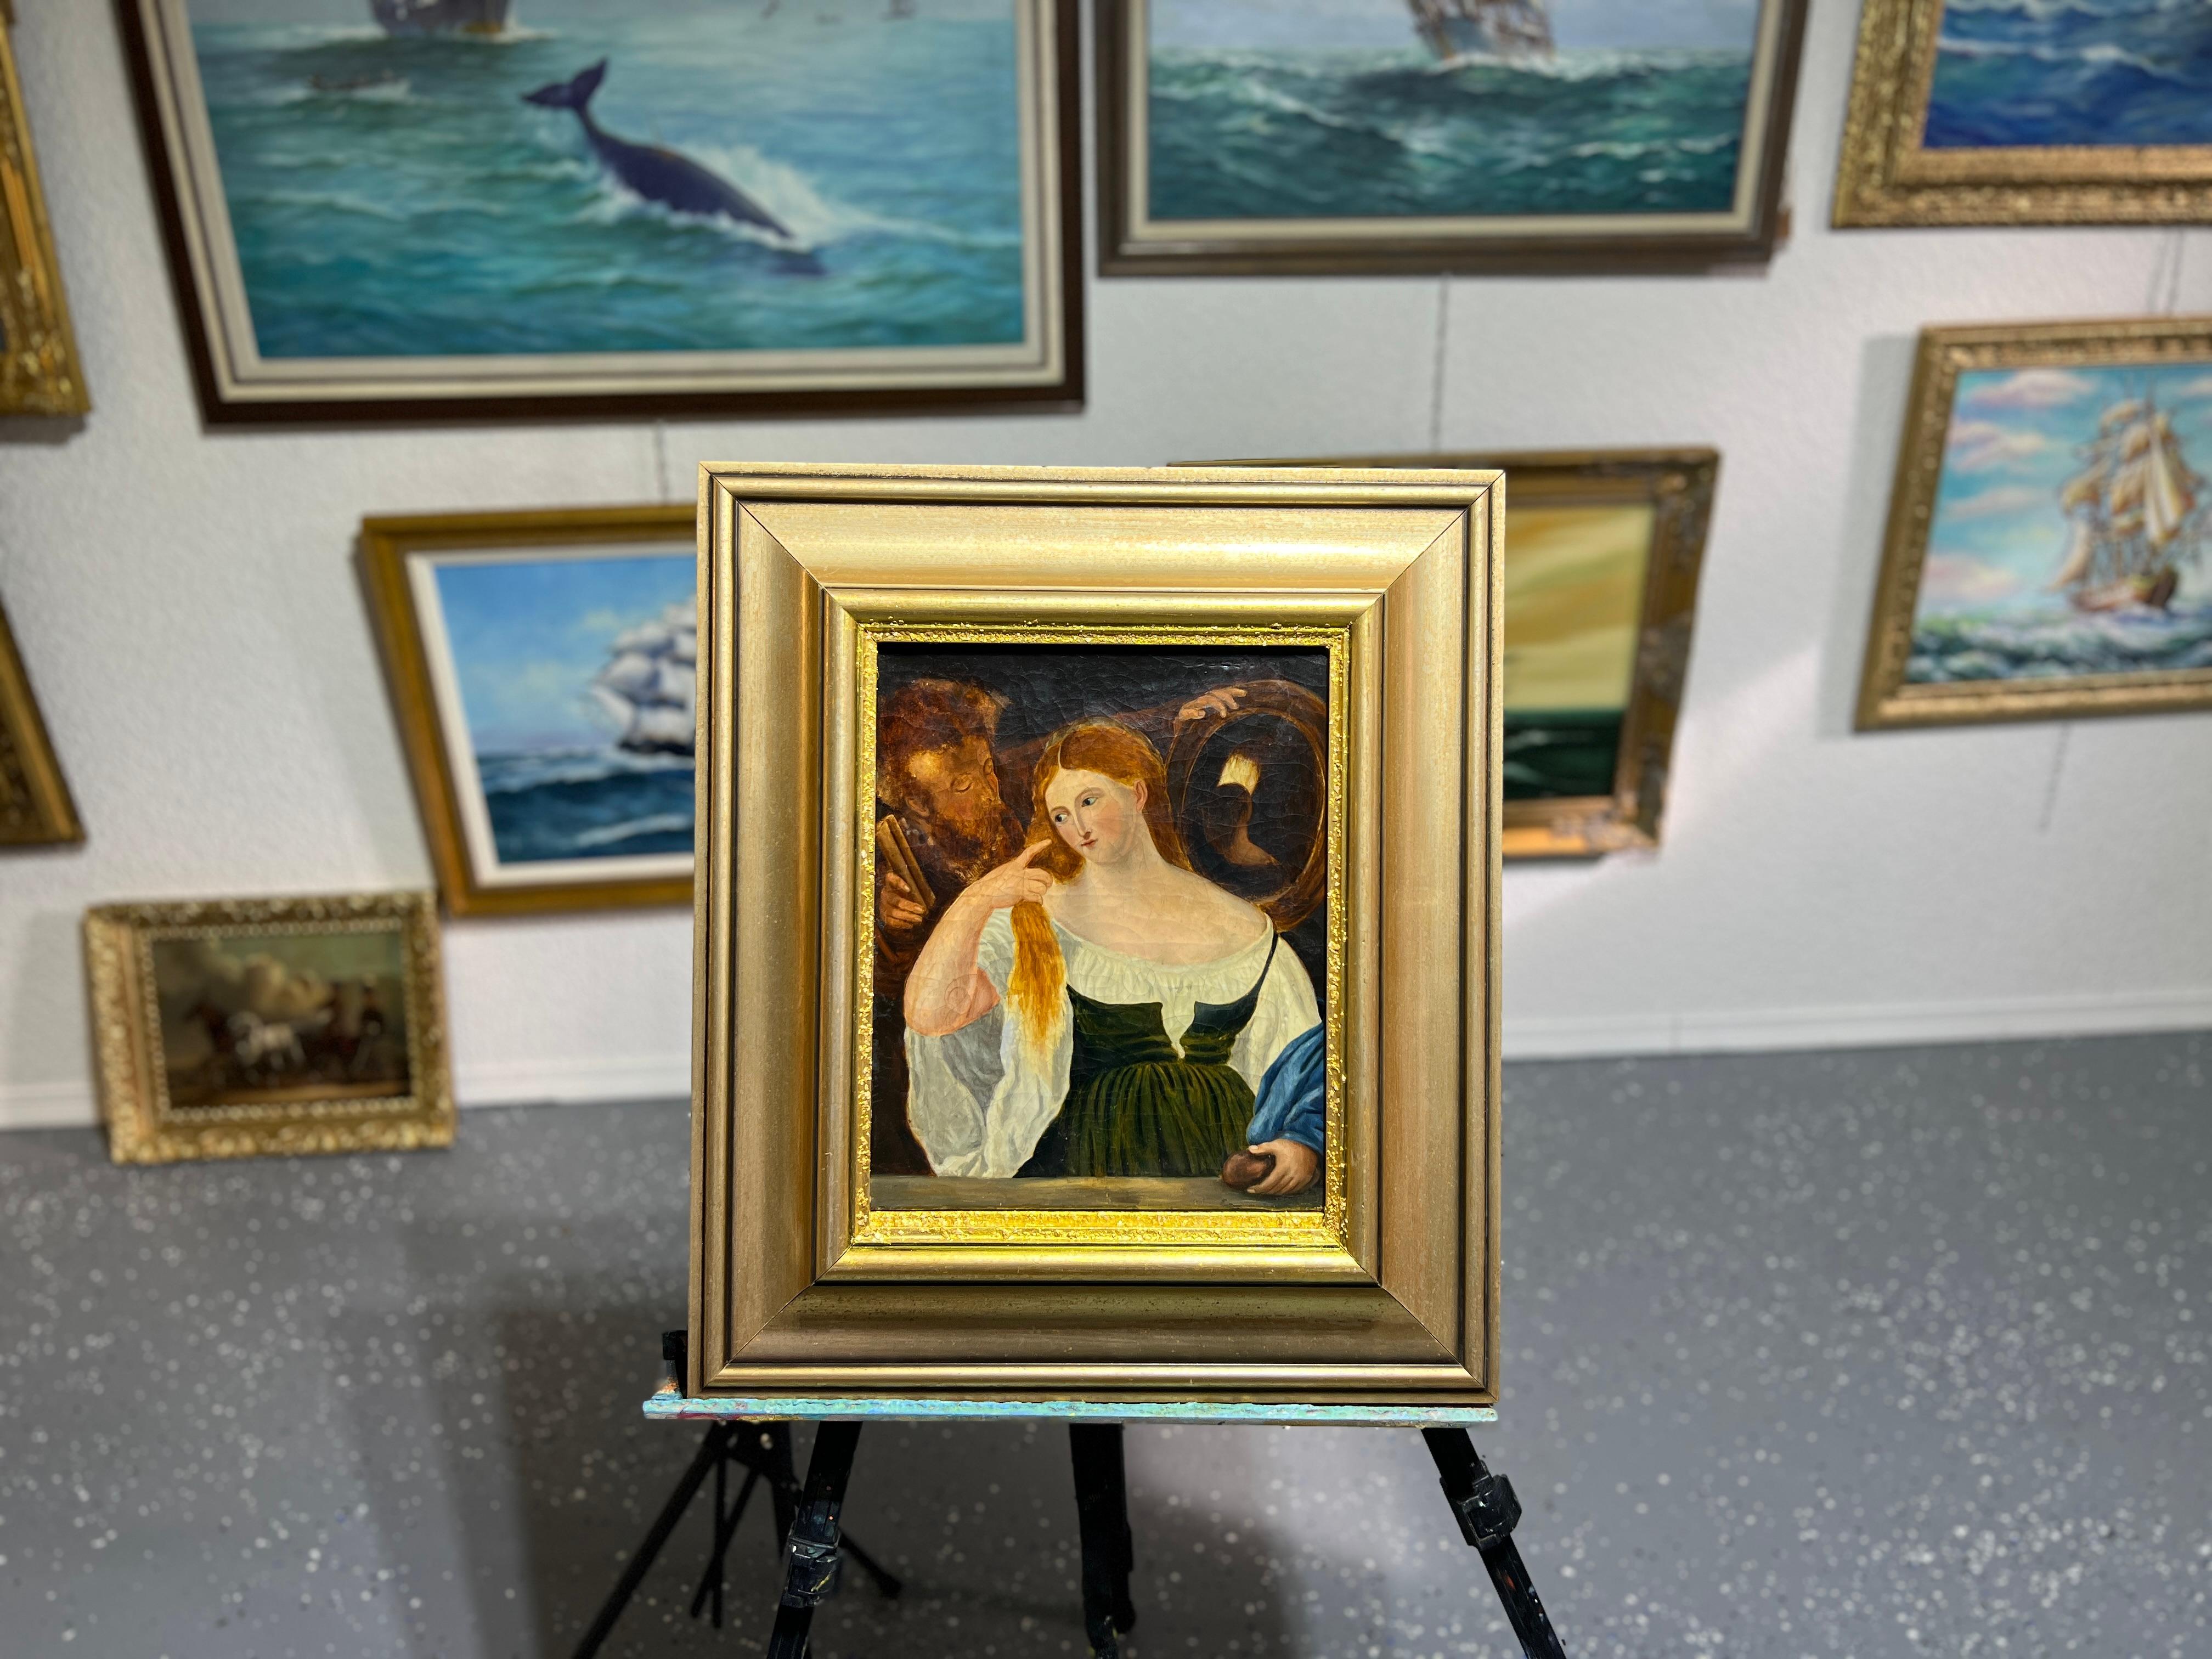 Up&Up est une très intéressante peinture à l'huile sur toile originale du XIXe siècle représentant une femme qui surplombe un parapet et touche une bouteille posée dessus. De sa main droite, elle lui caresse les cheveux. Un homme derrière elle